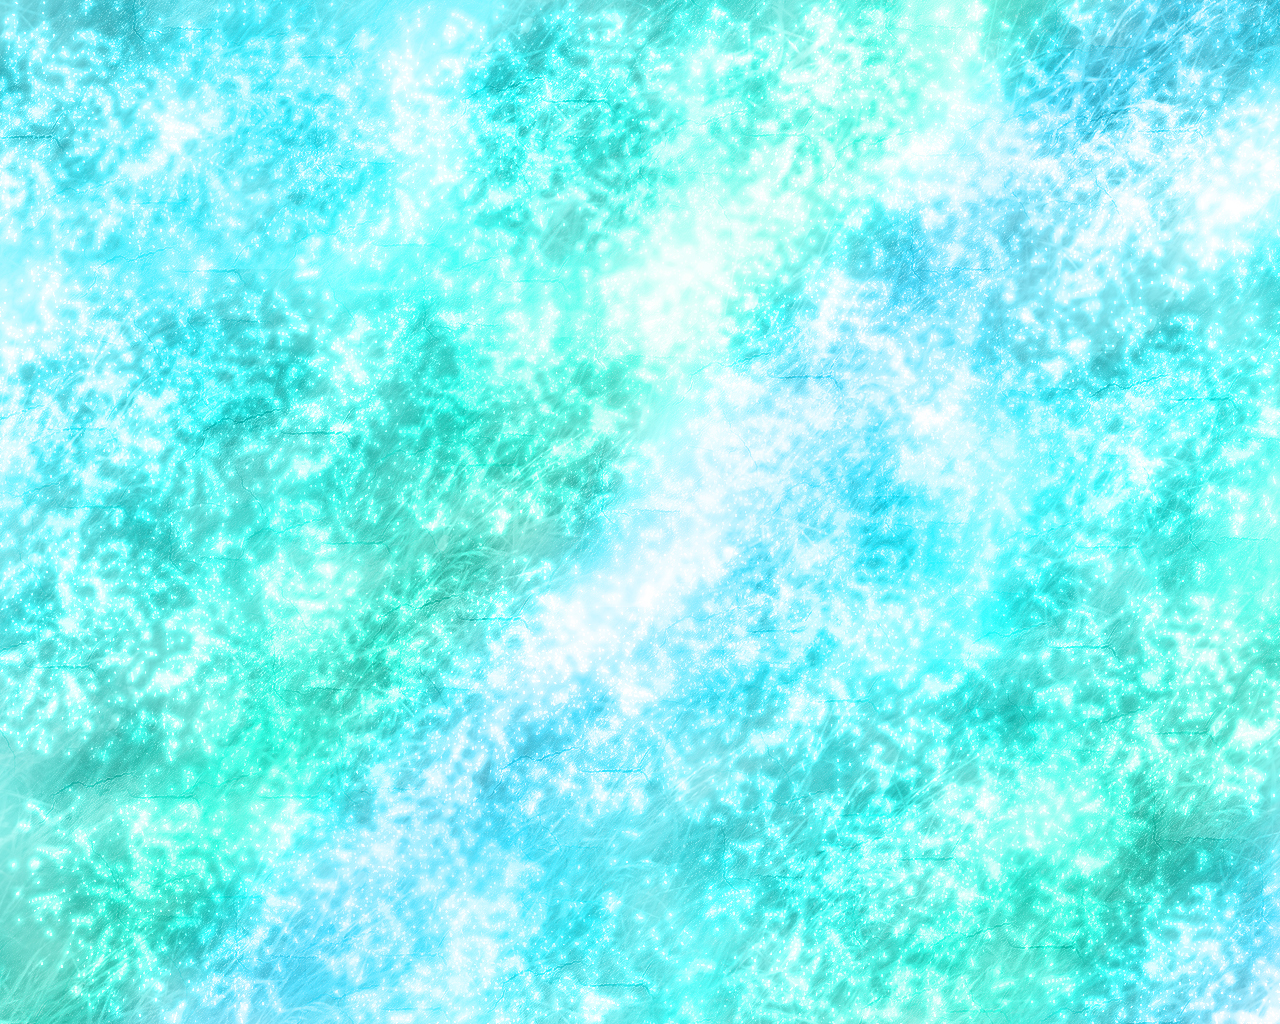 sparkly blue wallpaper by merieth on deviantart